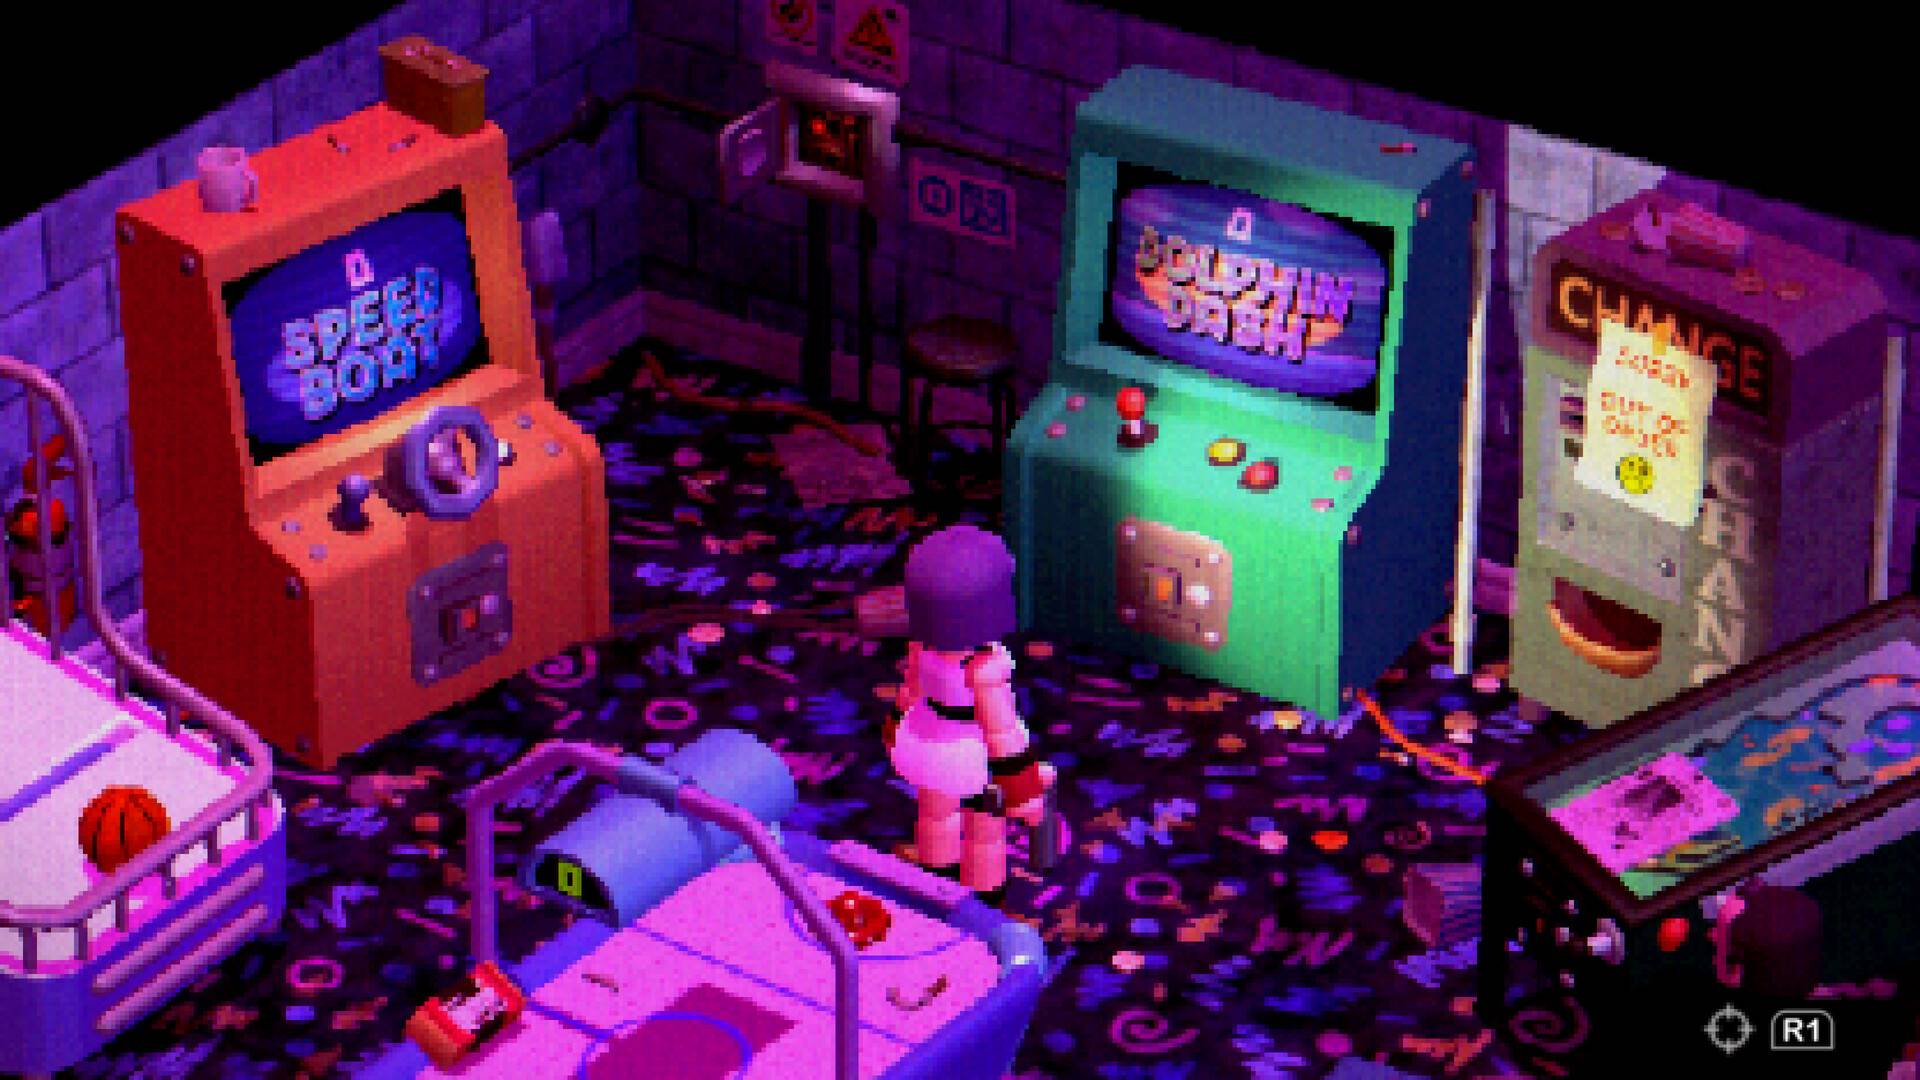 Un personaje en bloque se encuentra en una colorida sala de juegos.